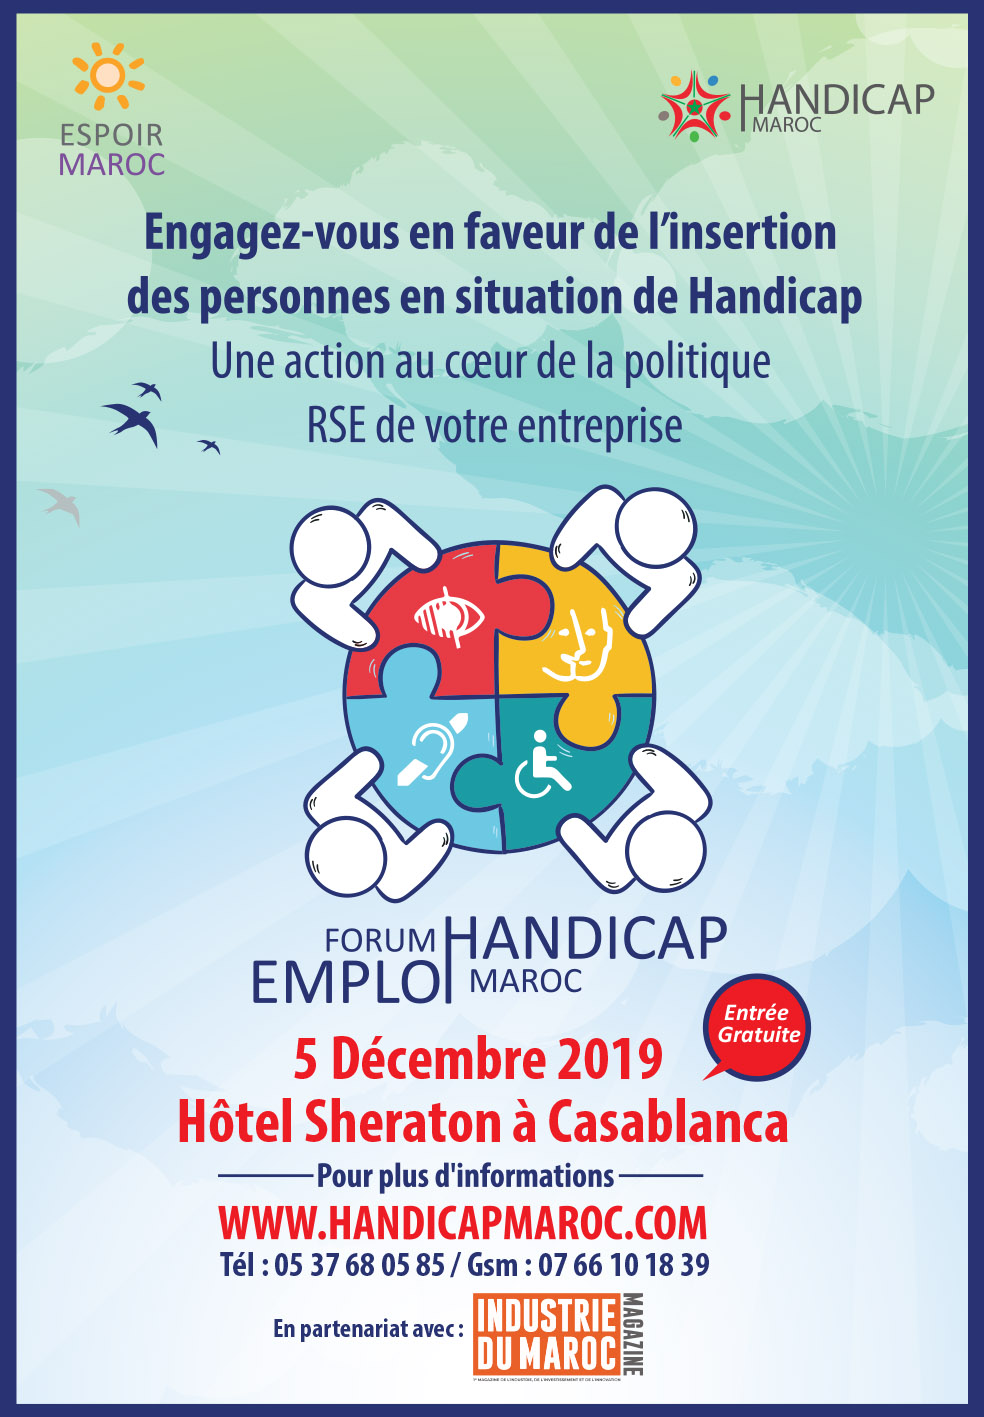 Forum national d’emploi et d’entreprenariat pour les personnes en situation de handicap au Maroc 